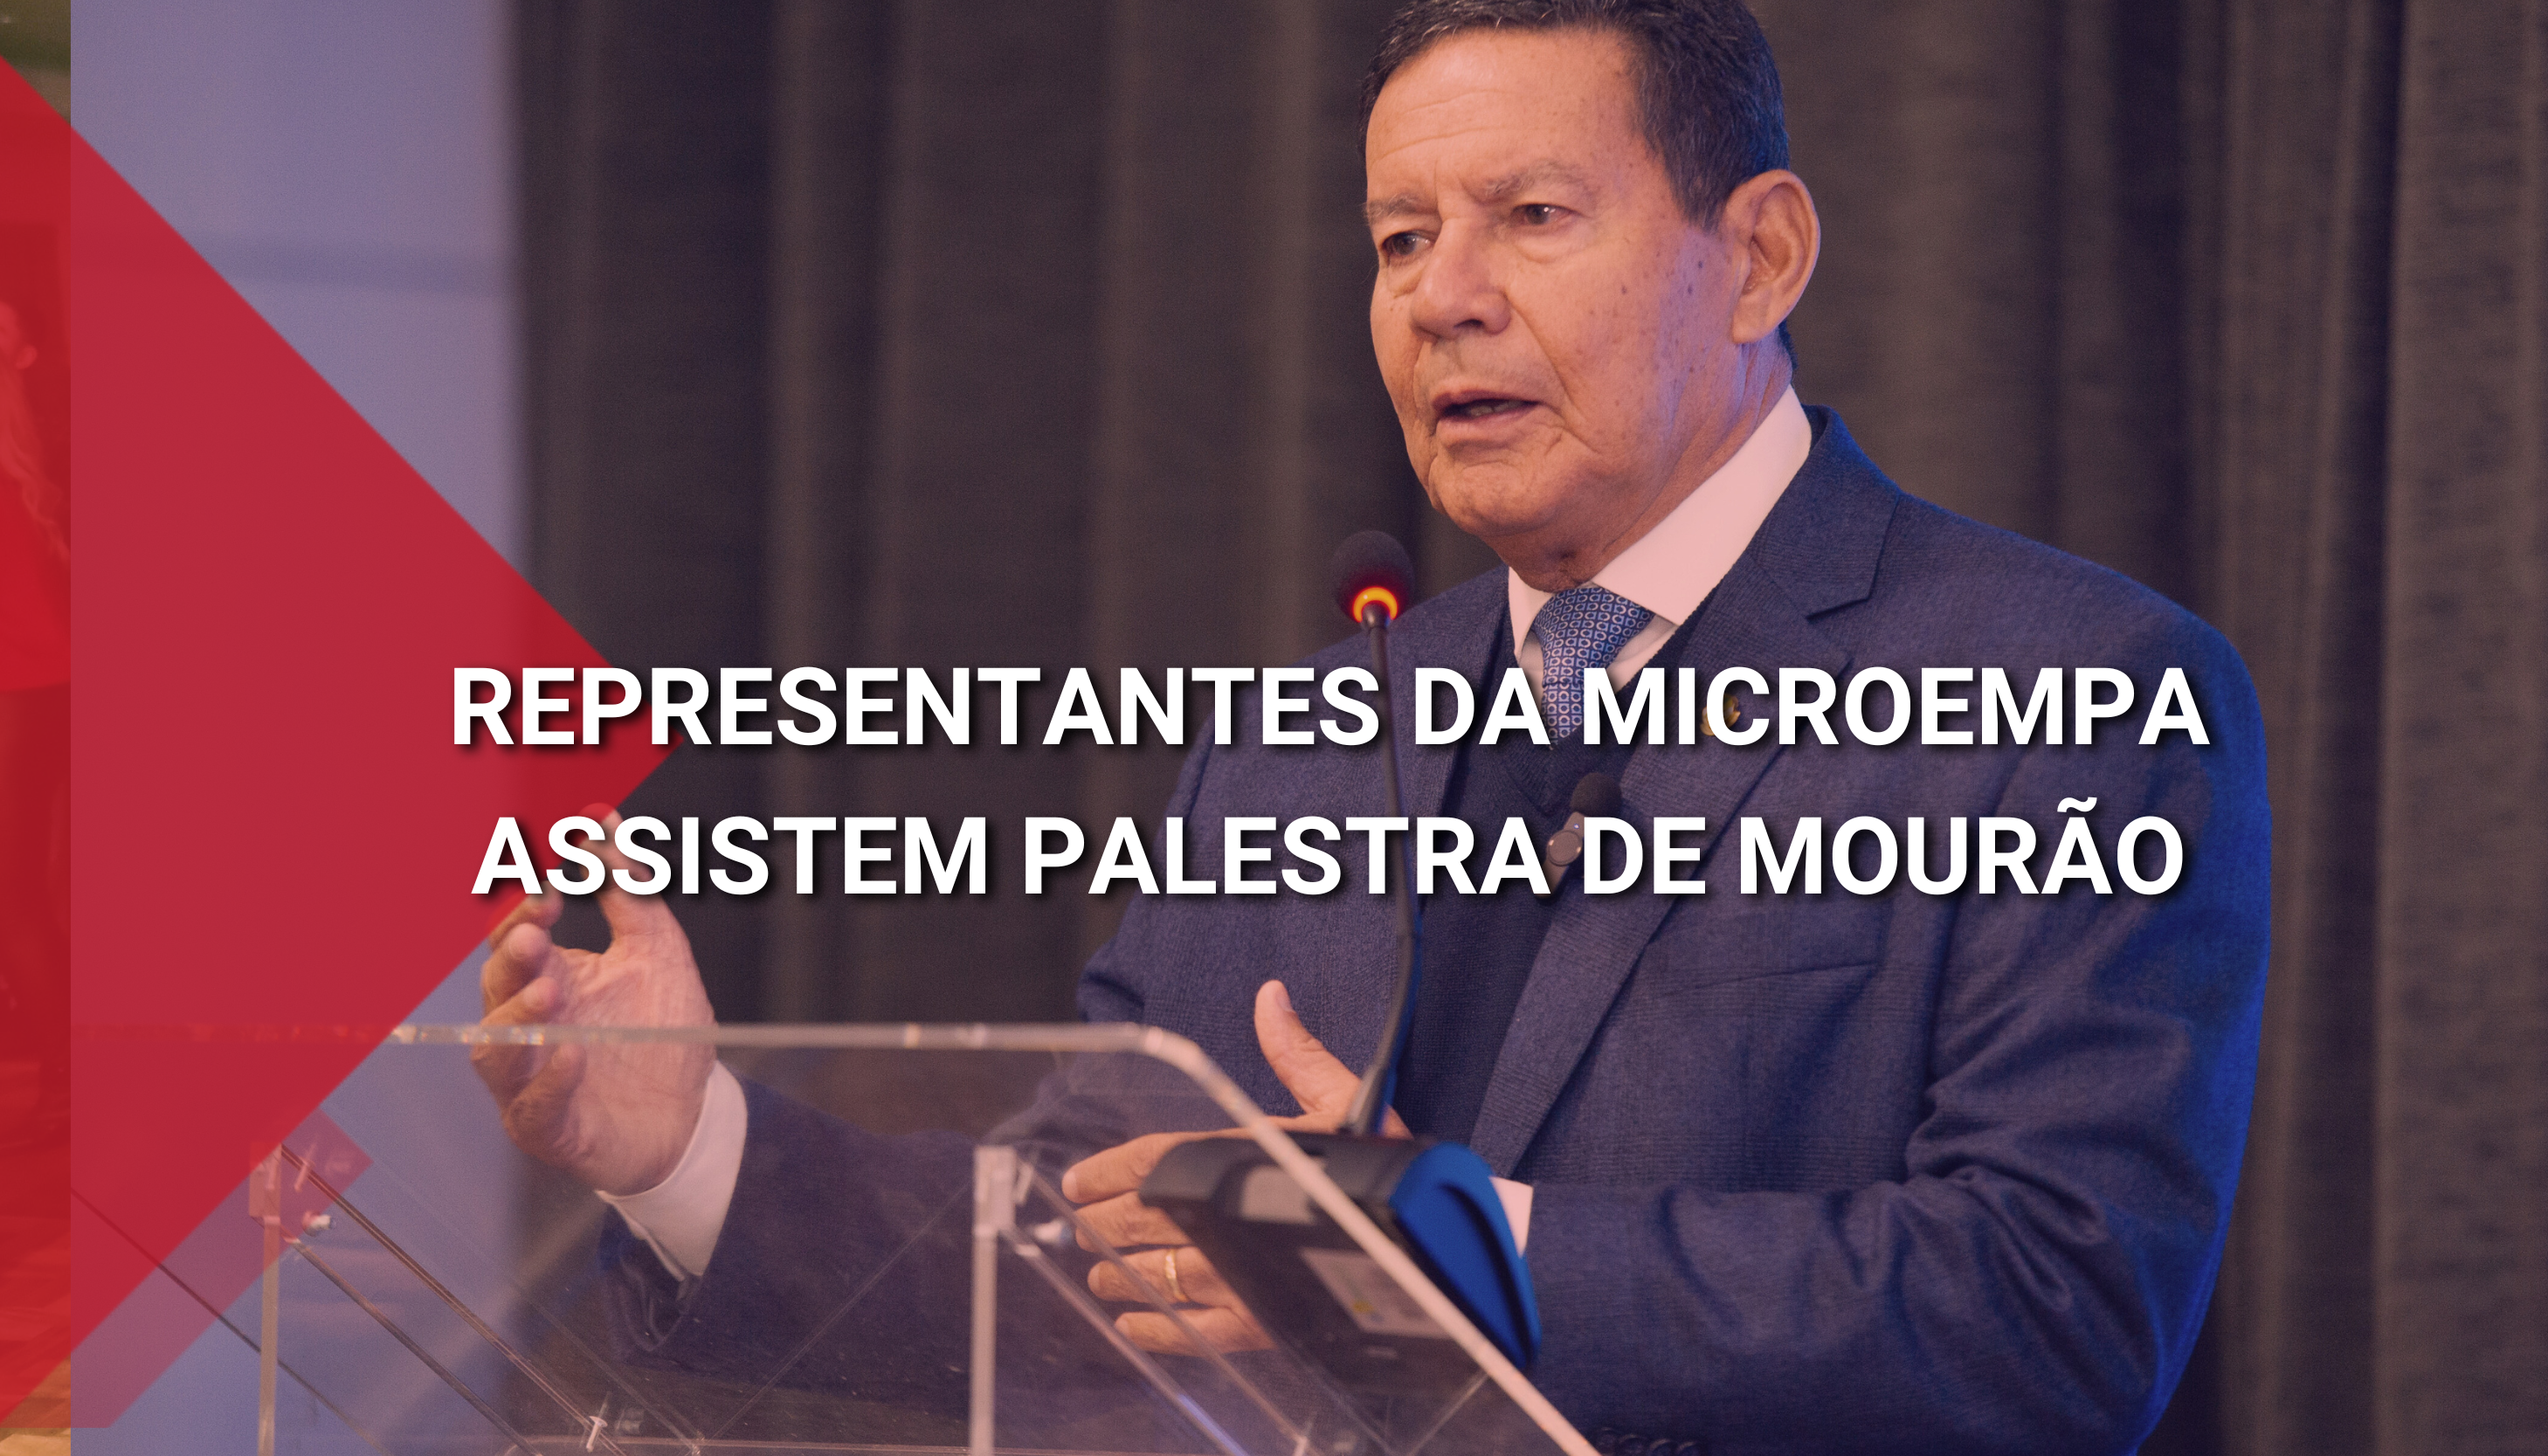 Mourão palestra em evento da CIC para representantes da Microempa.